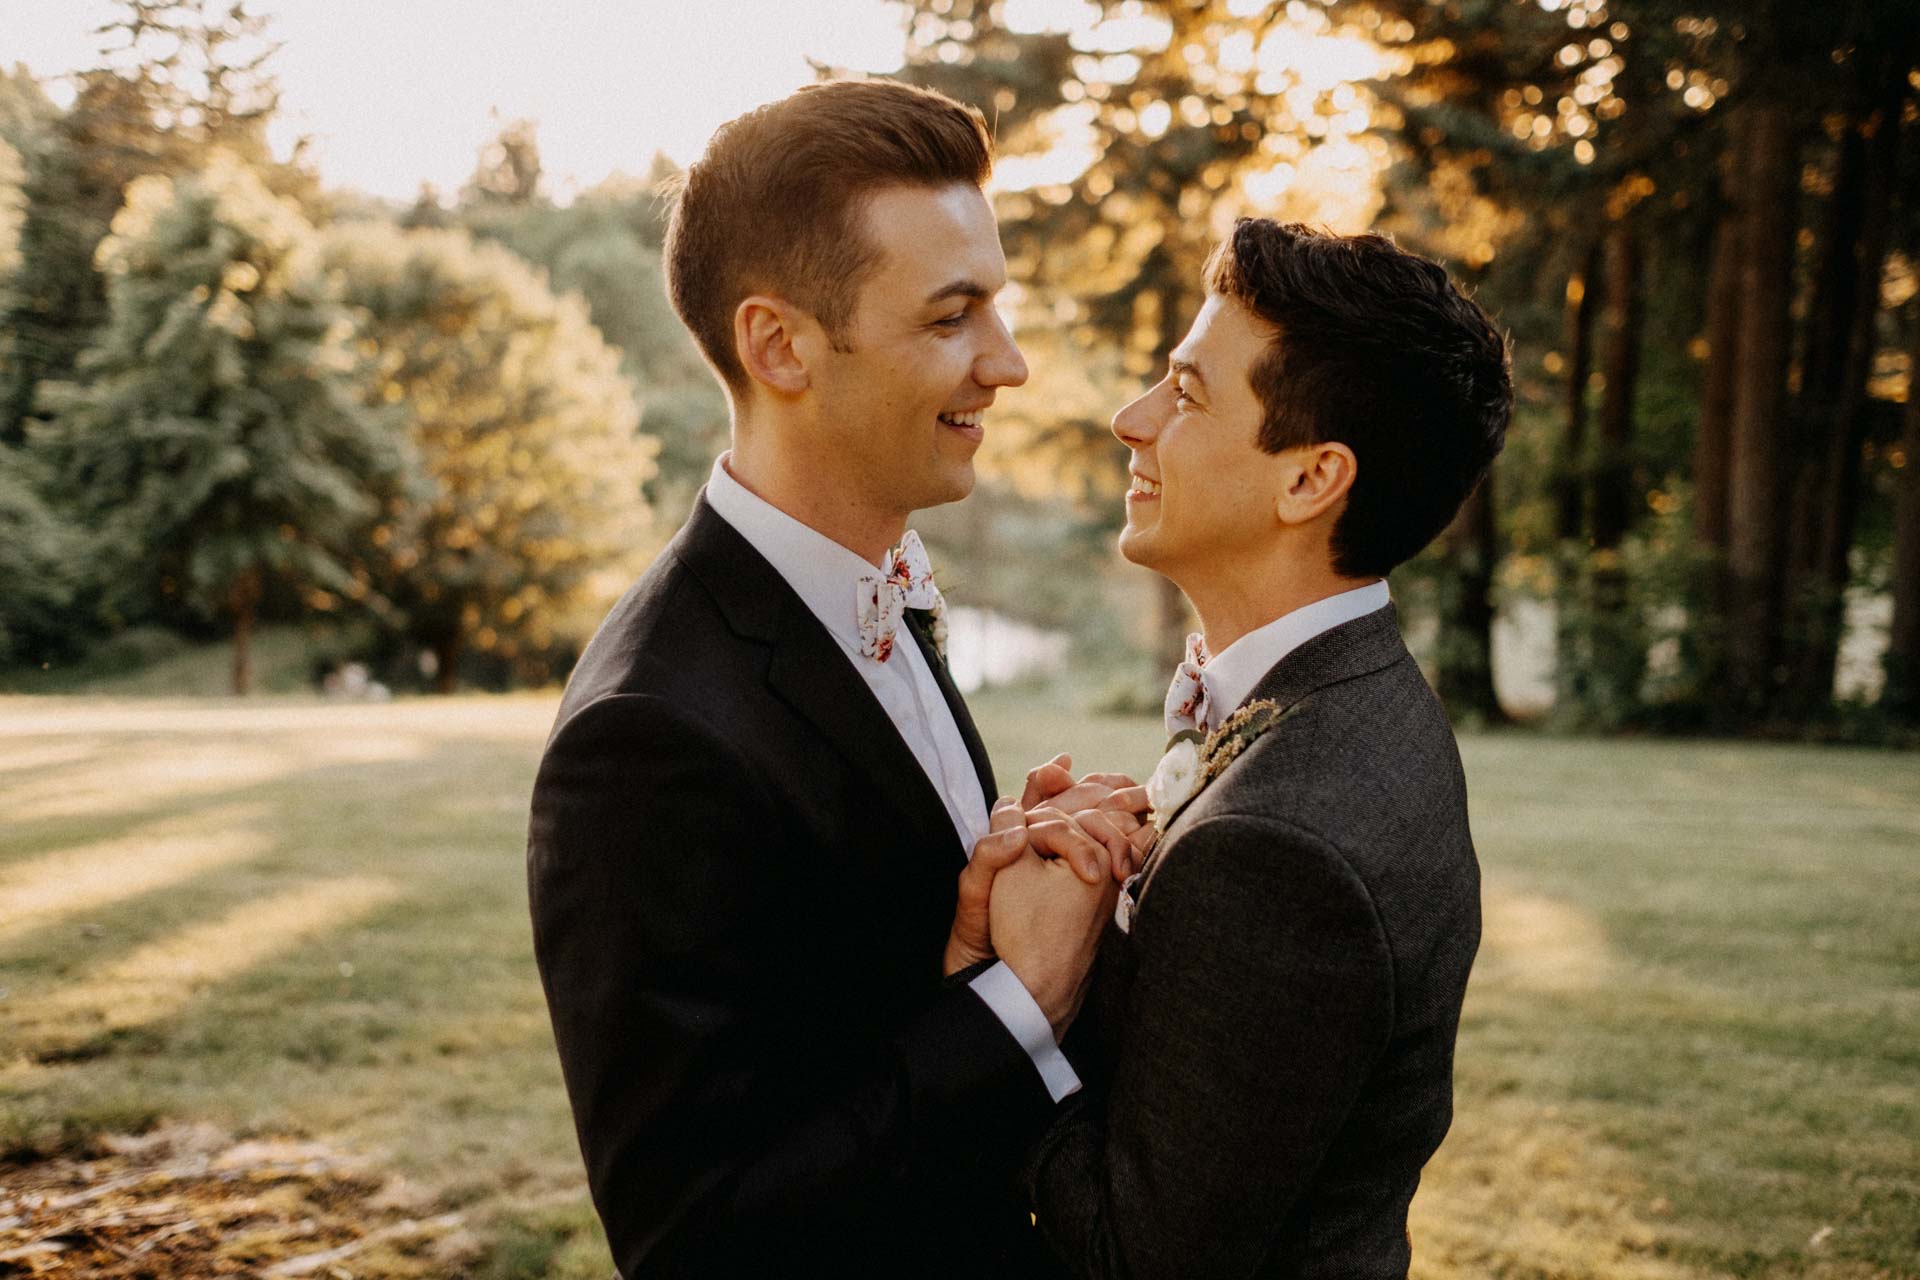 Married American gay couple Matthew and Michael @matthewschueller